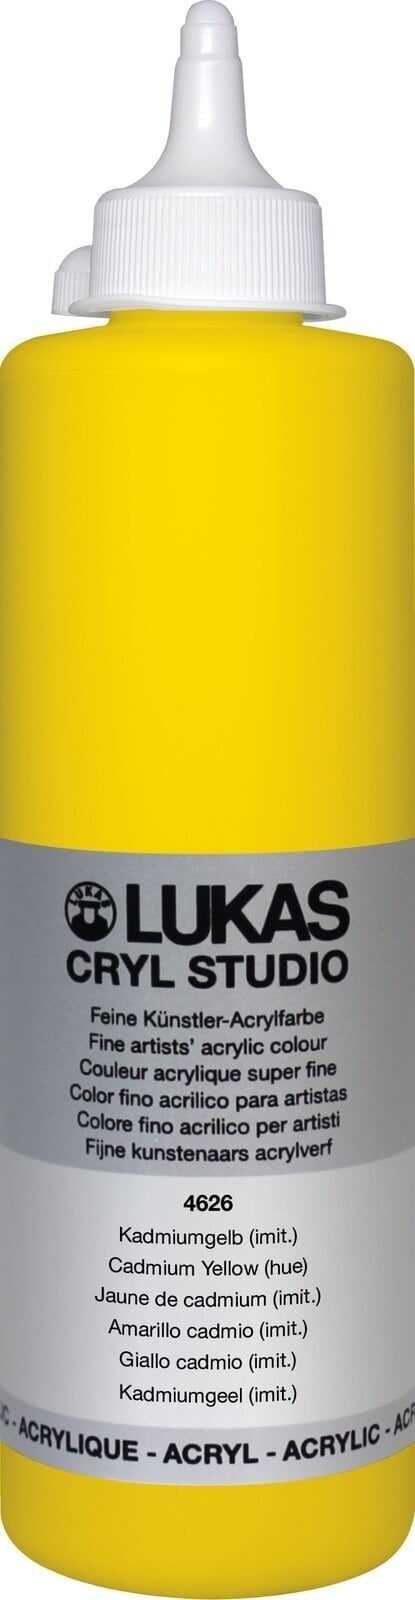 Acrylverf Lukas Cryl Studio Acrylverf 500 ml Cadmium Yellow Hue